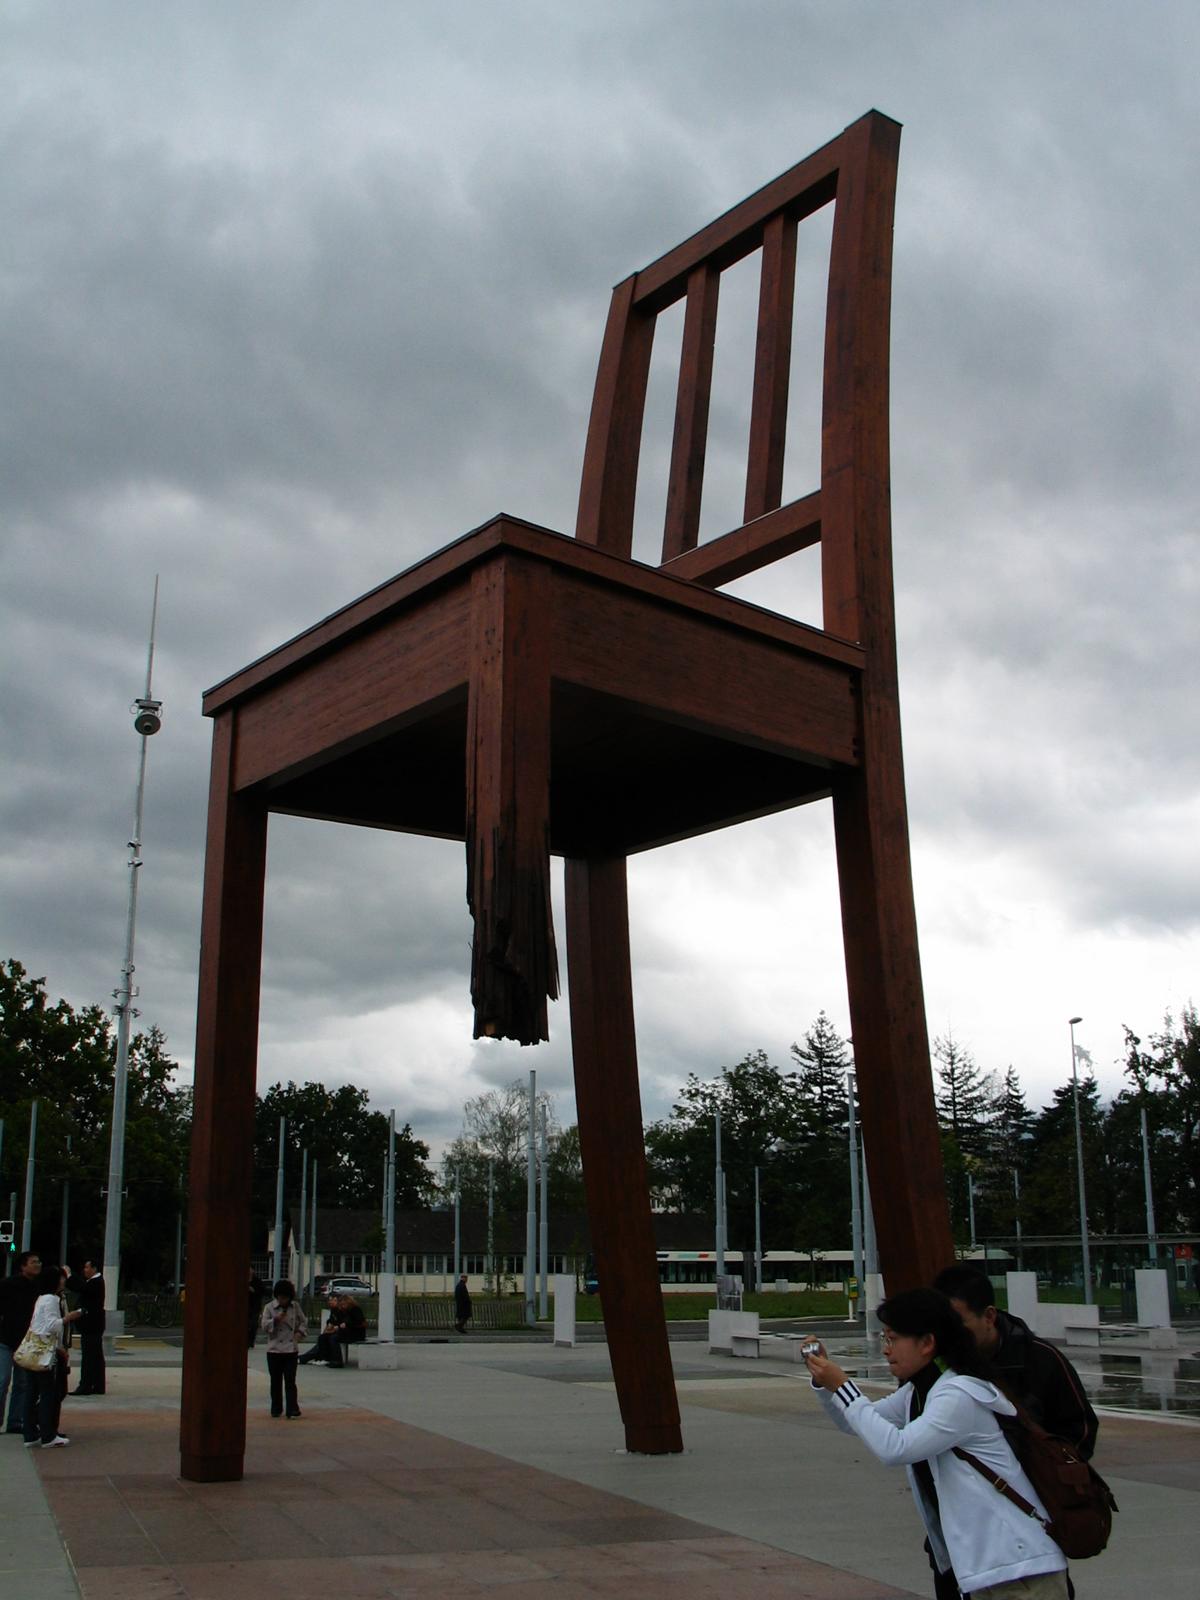 A 3-legged Chair